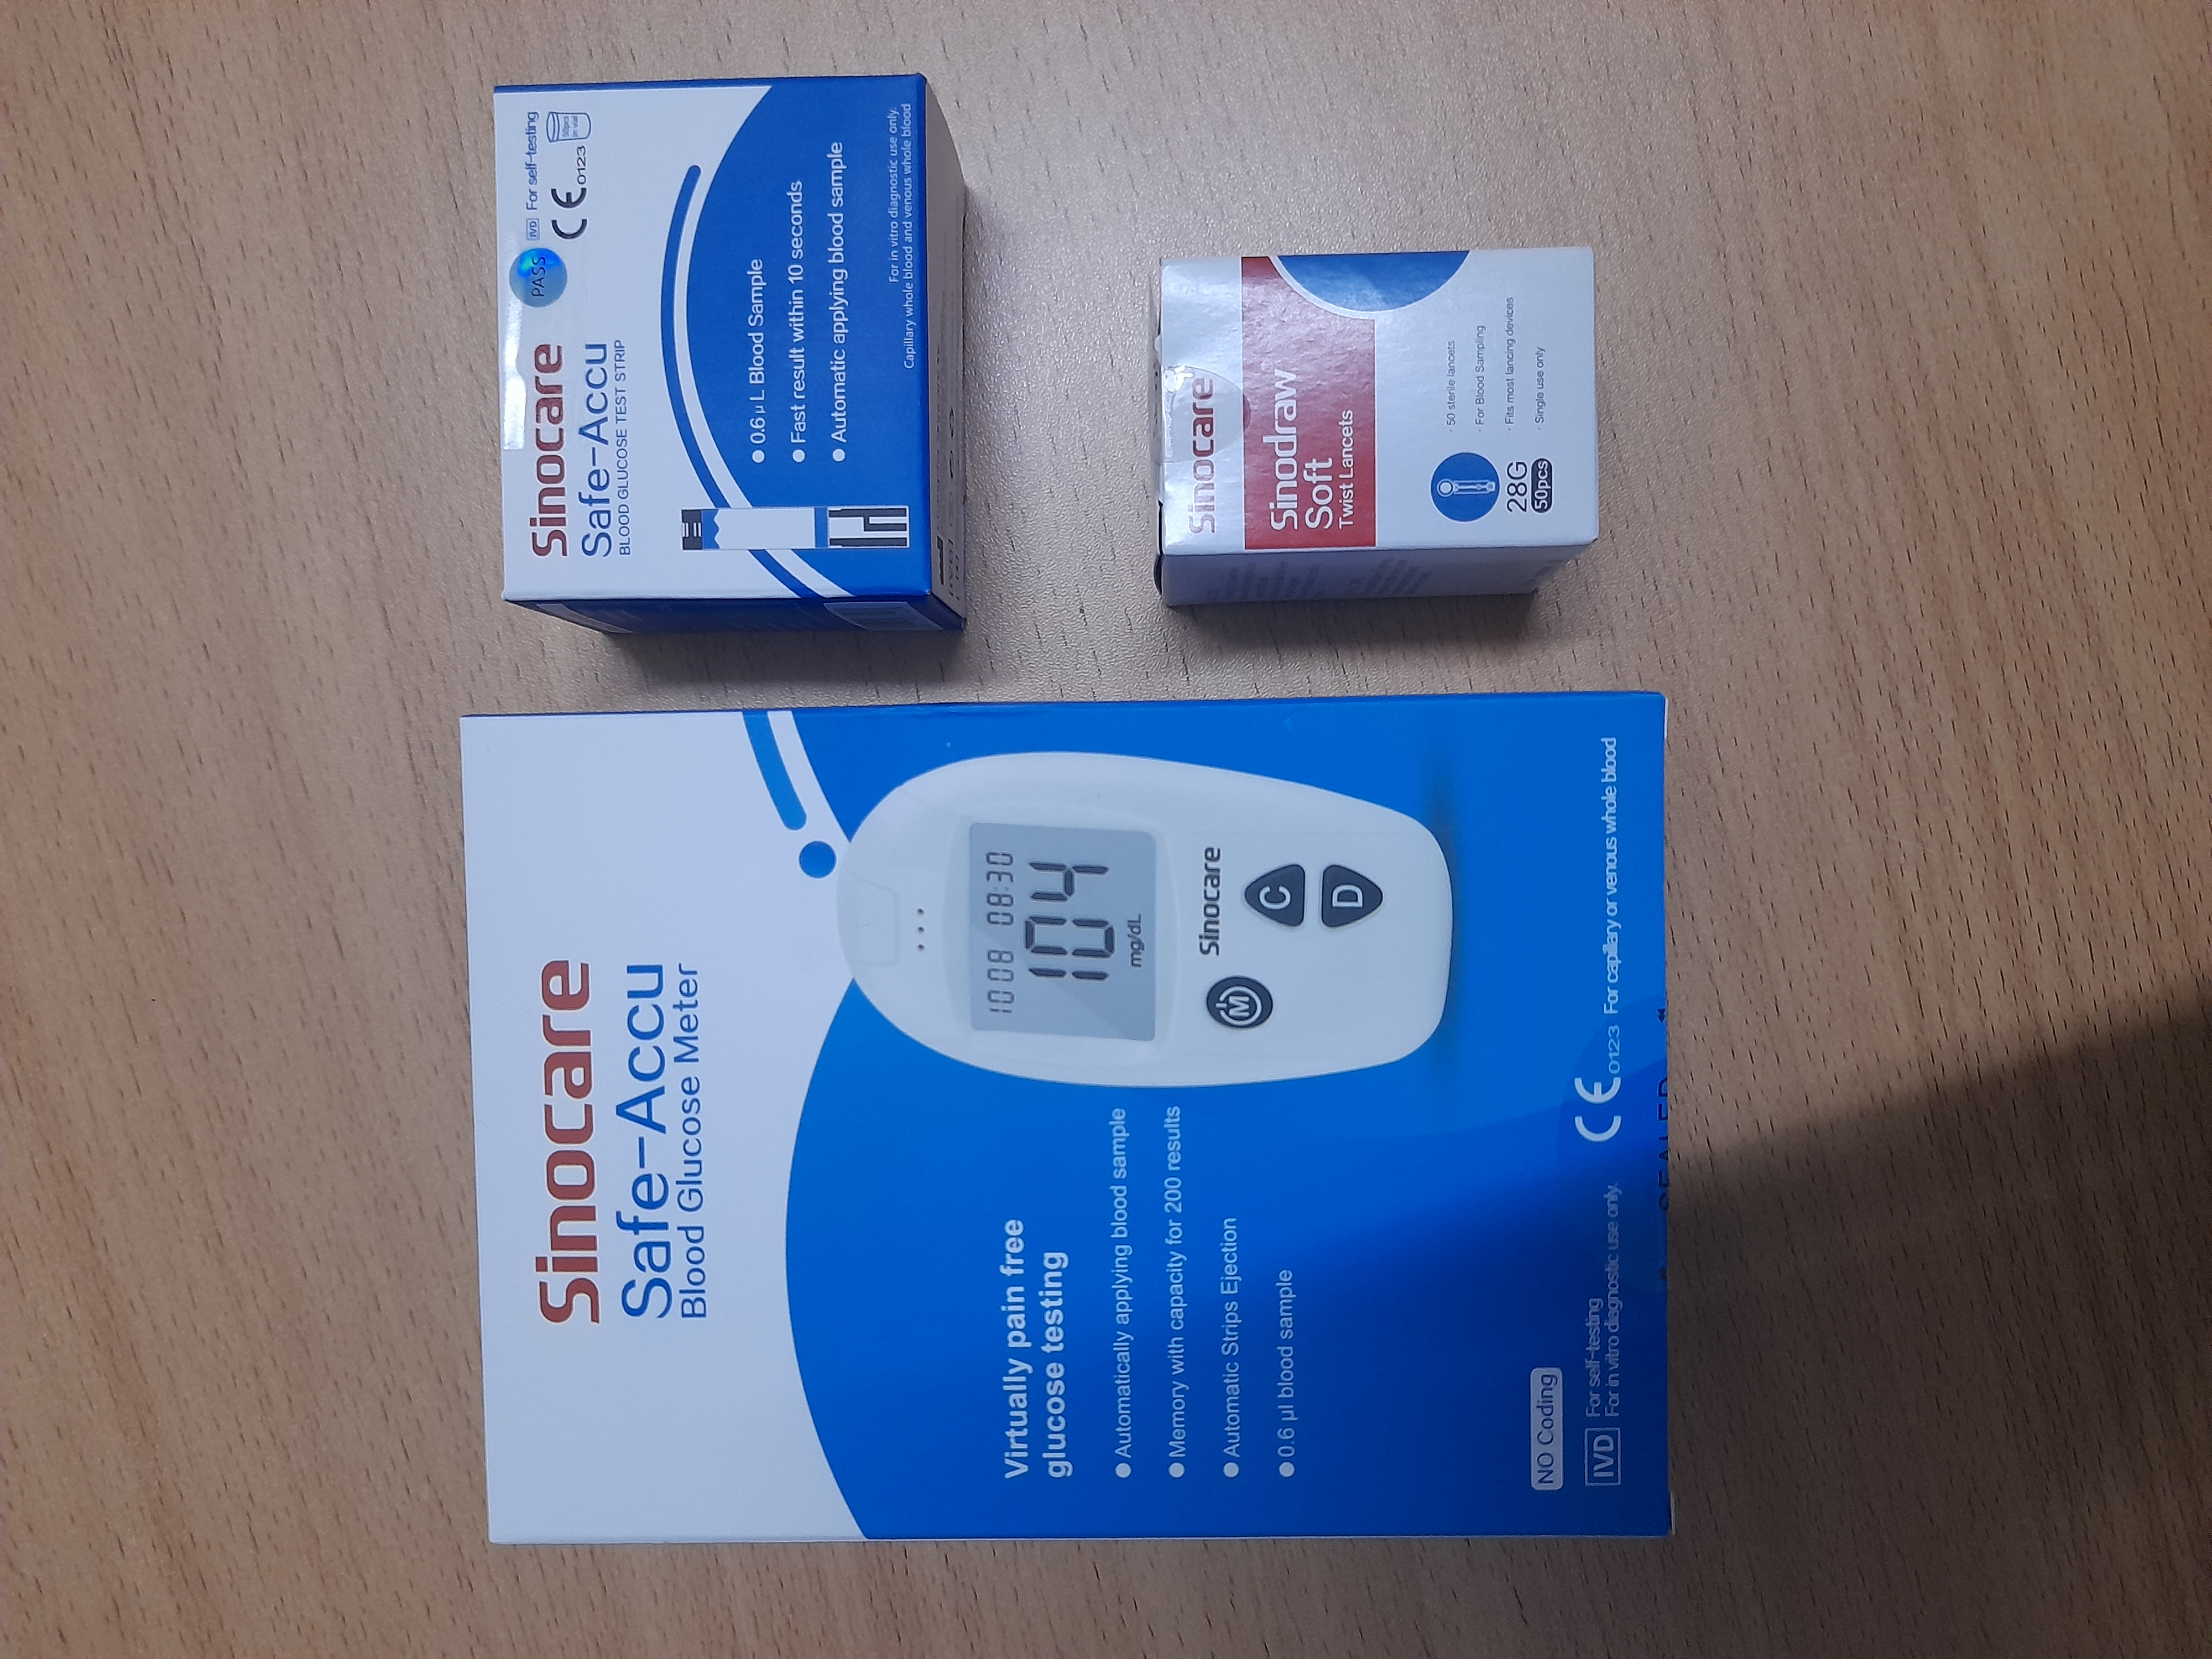 Safe Accu (SInocare) Blood Glucose Meter